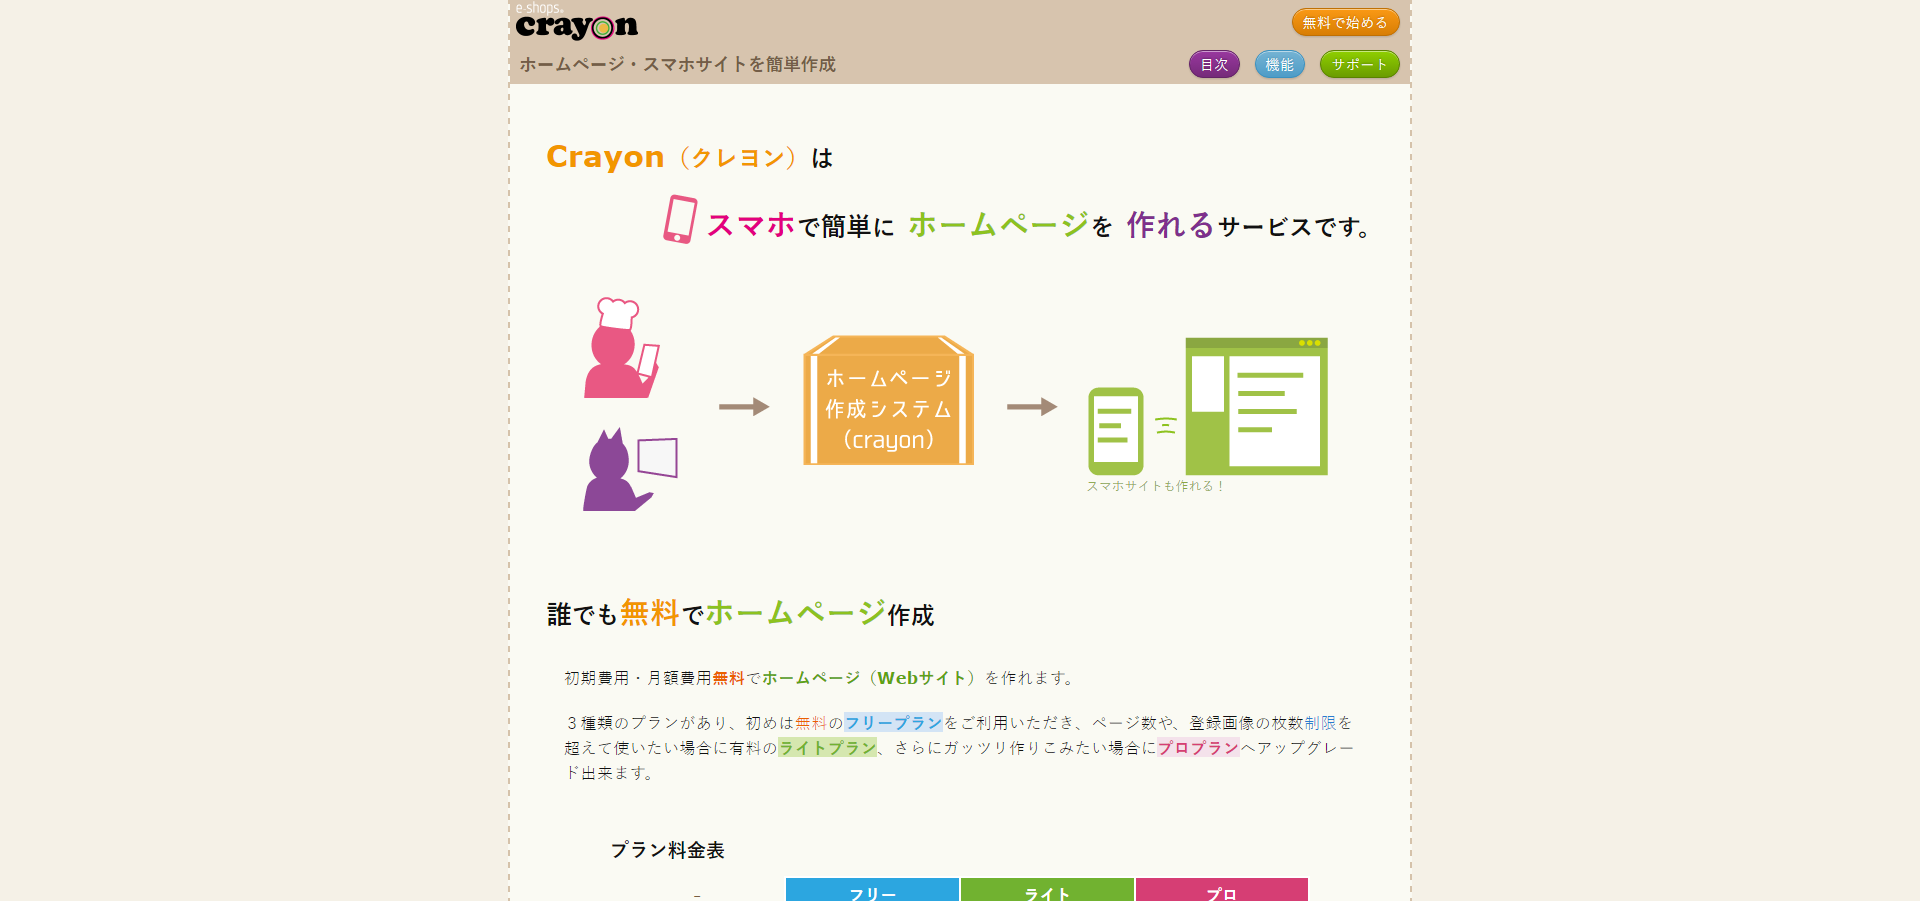 「crayon」のサイト